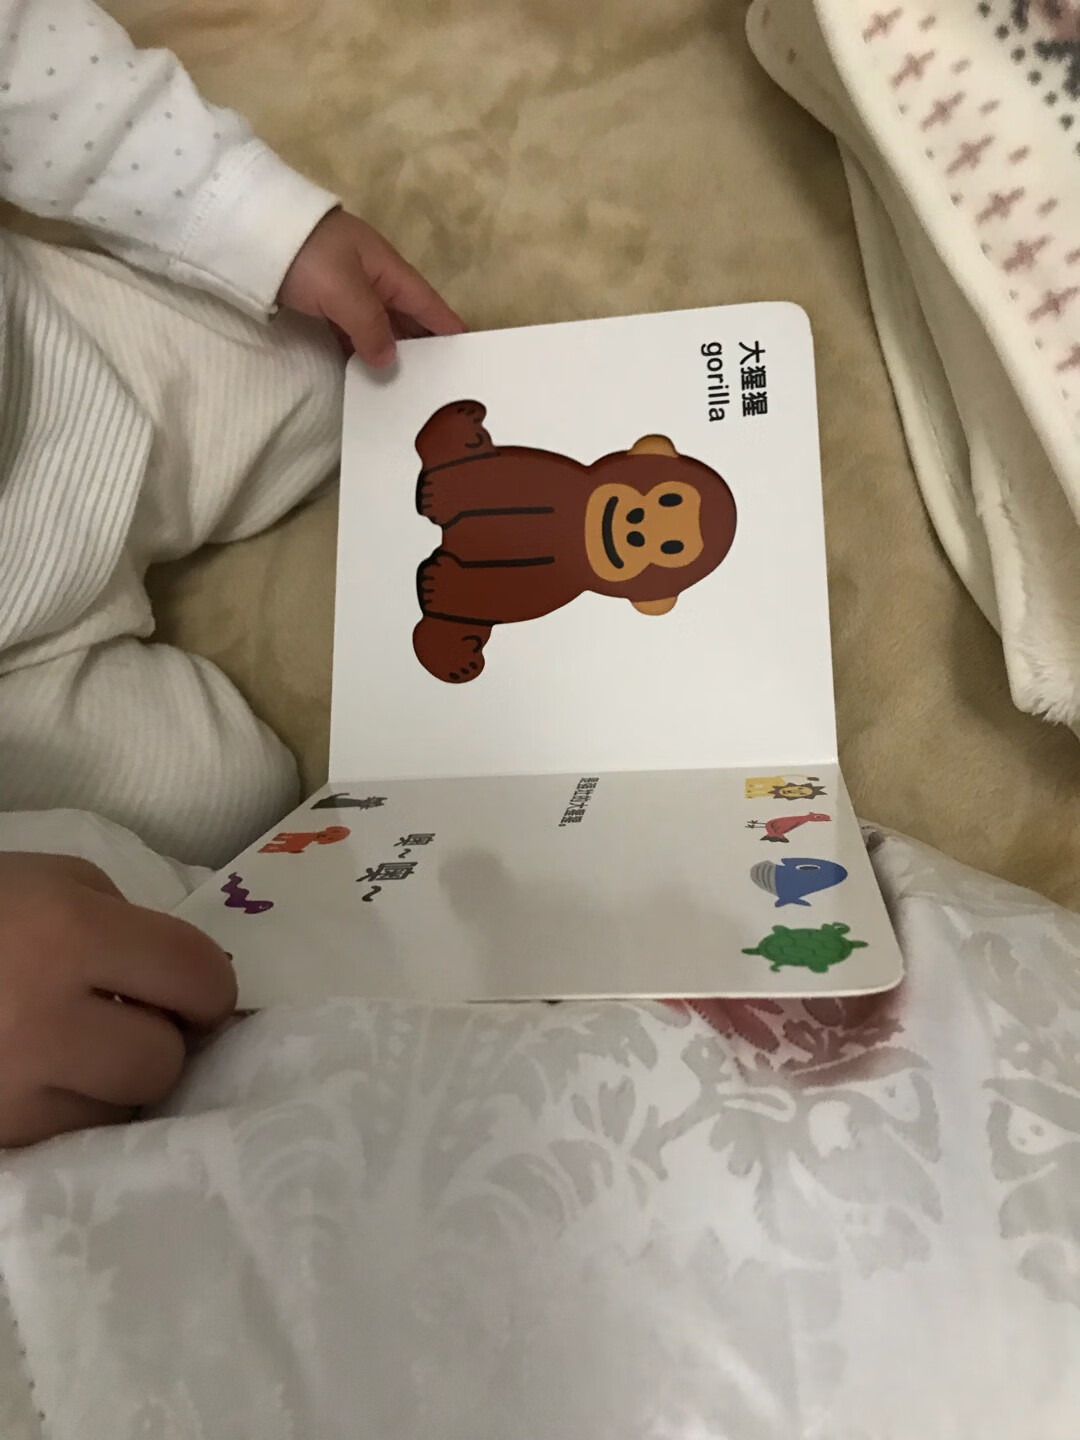 这套书挺不错的，图片也很好看，宝宝喜欢。